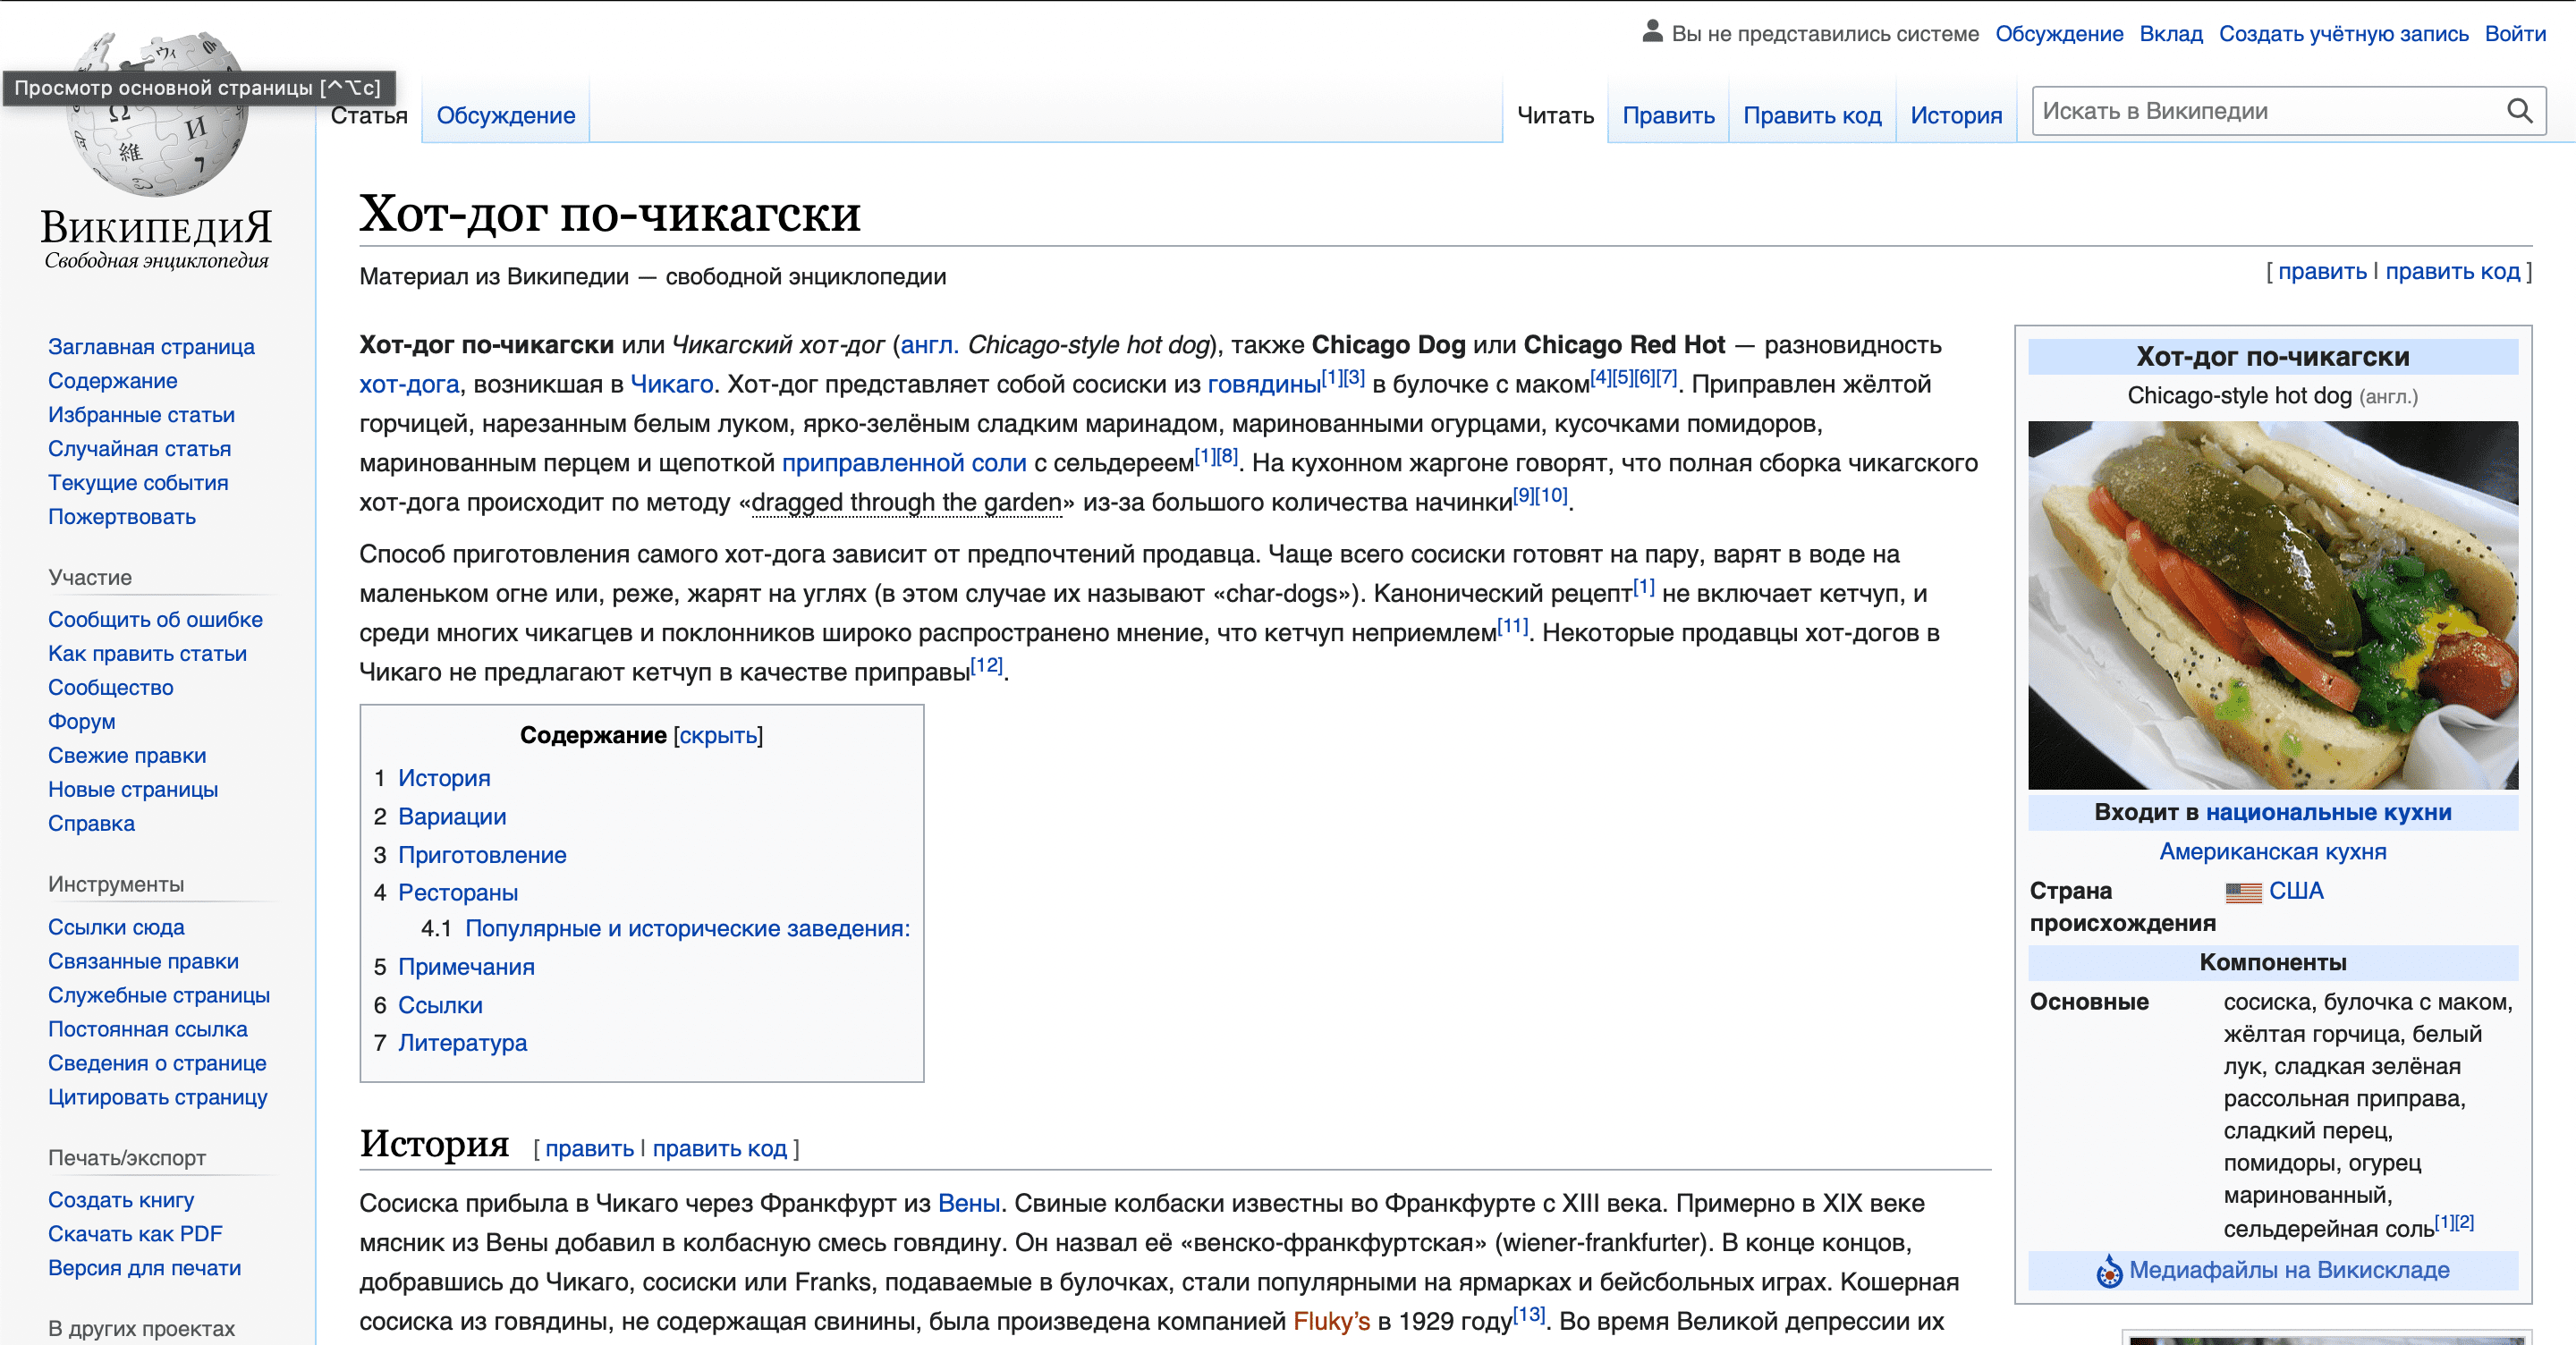 Скрин из Википедии